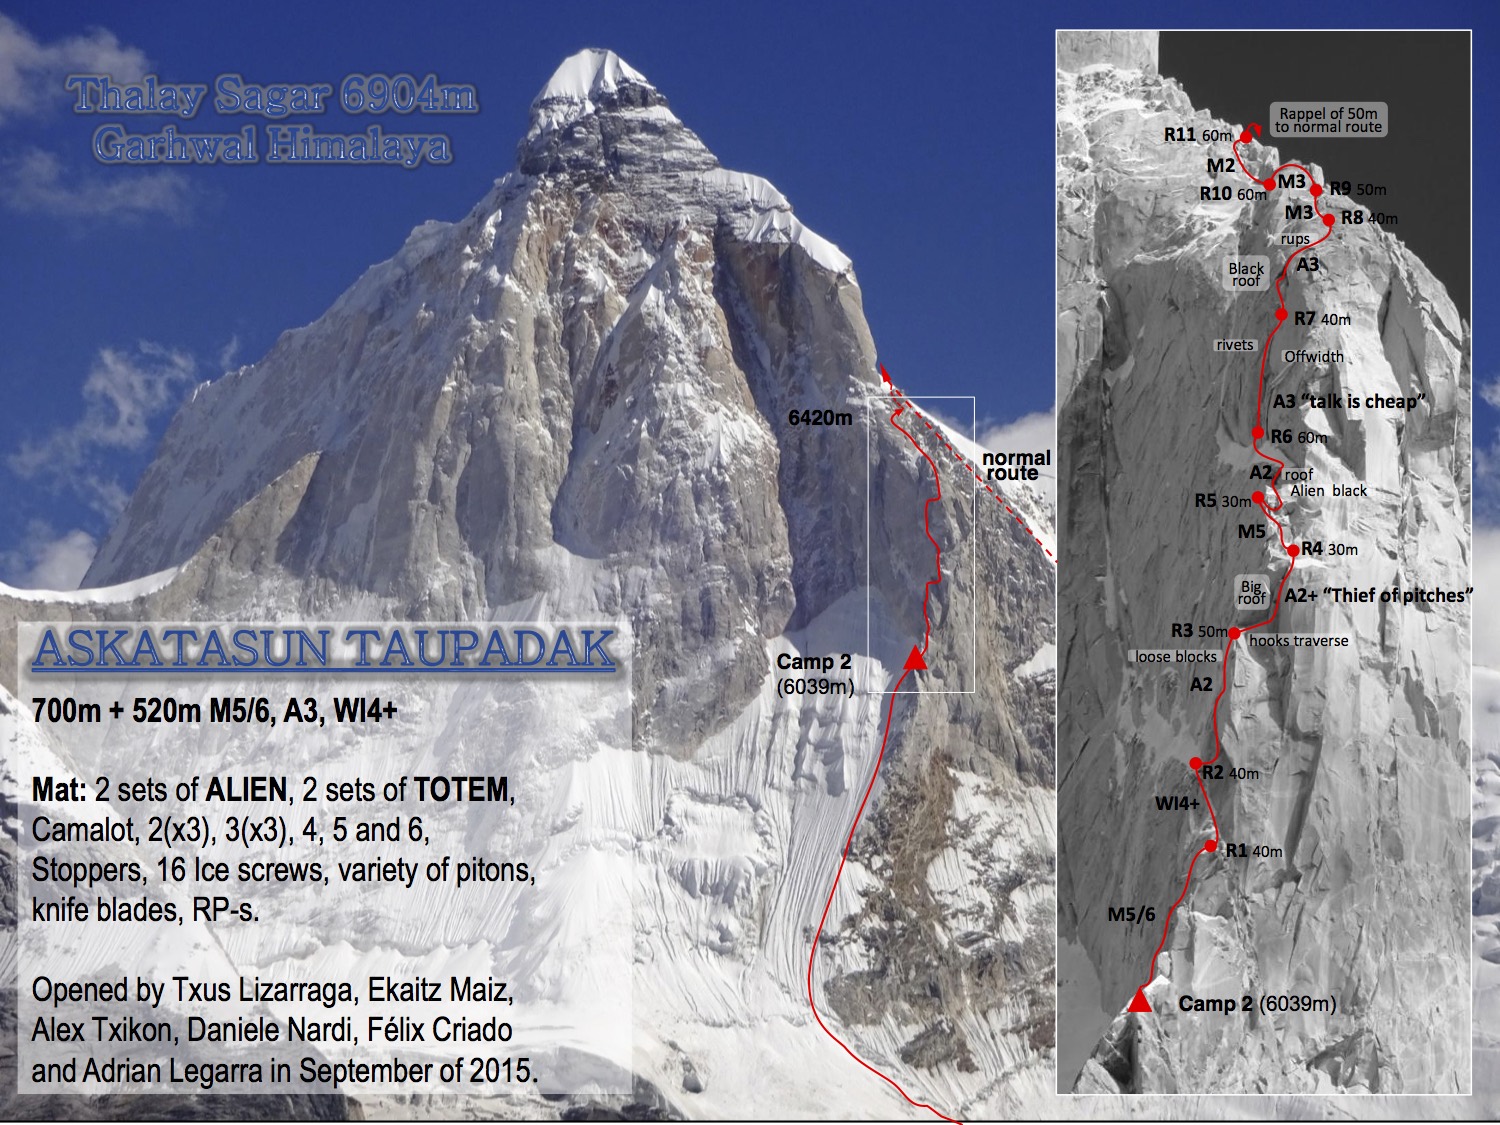  маршрут "Askatasun Taupadak " на вершину Thalay Sagar в Индийских Гималаях